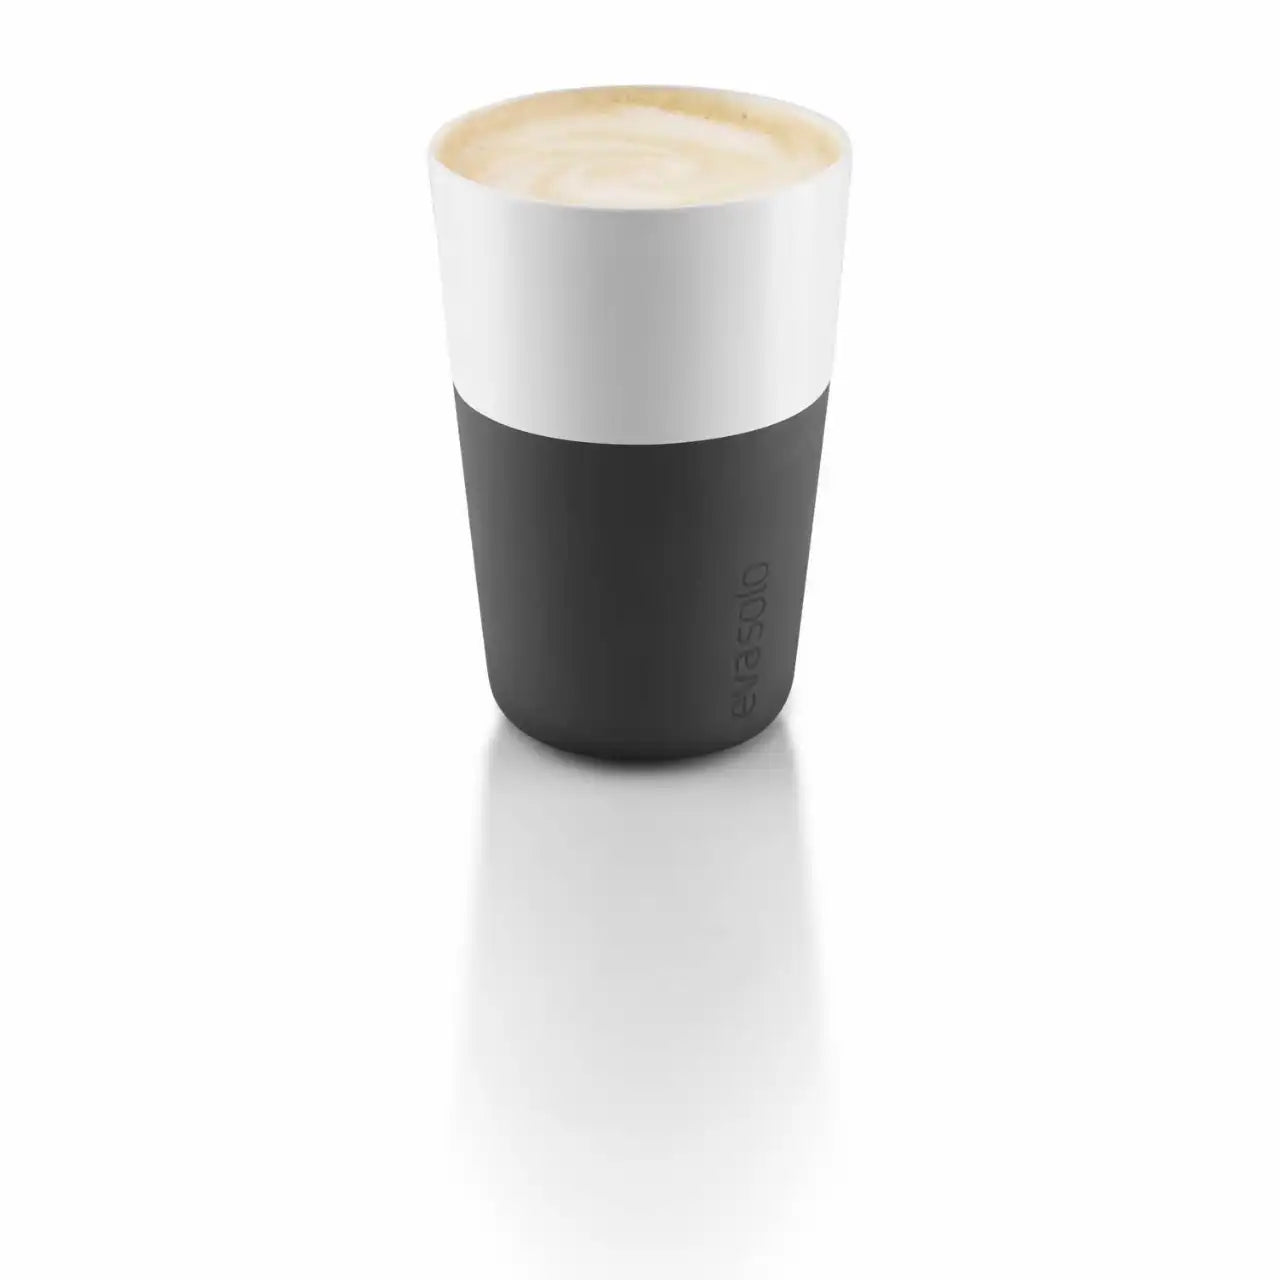 Cafe Latte tumbler - 2 PCS. - CARBON BLACK